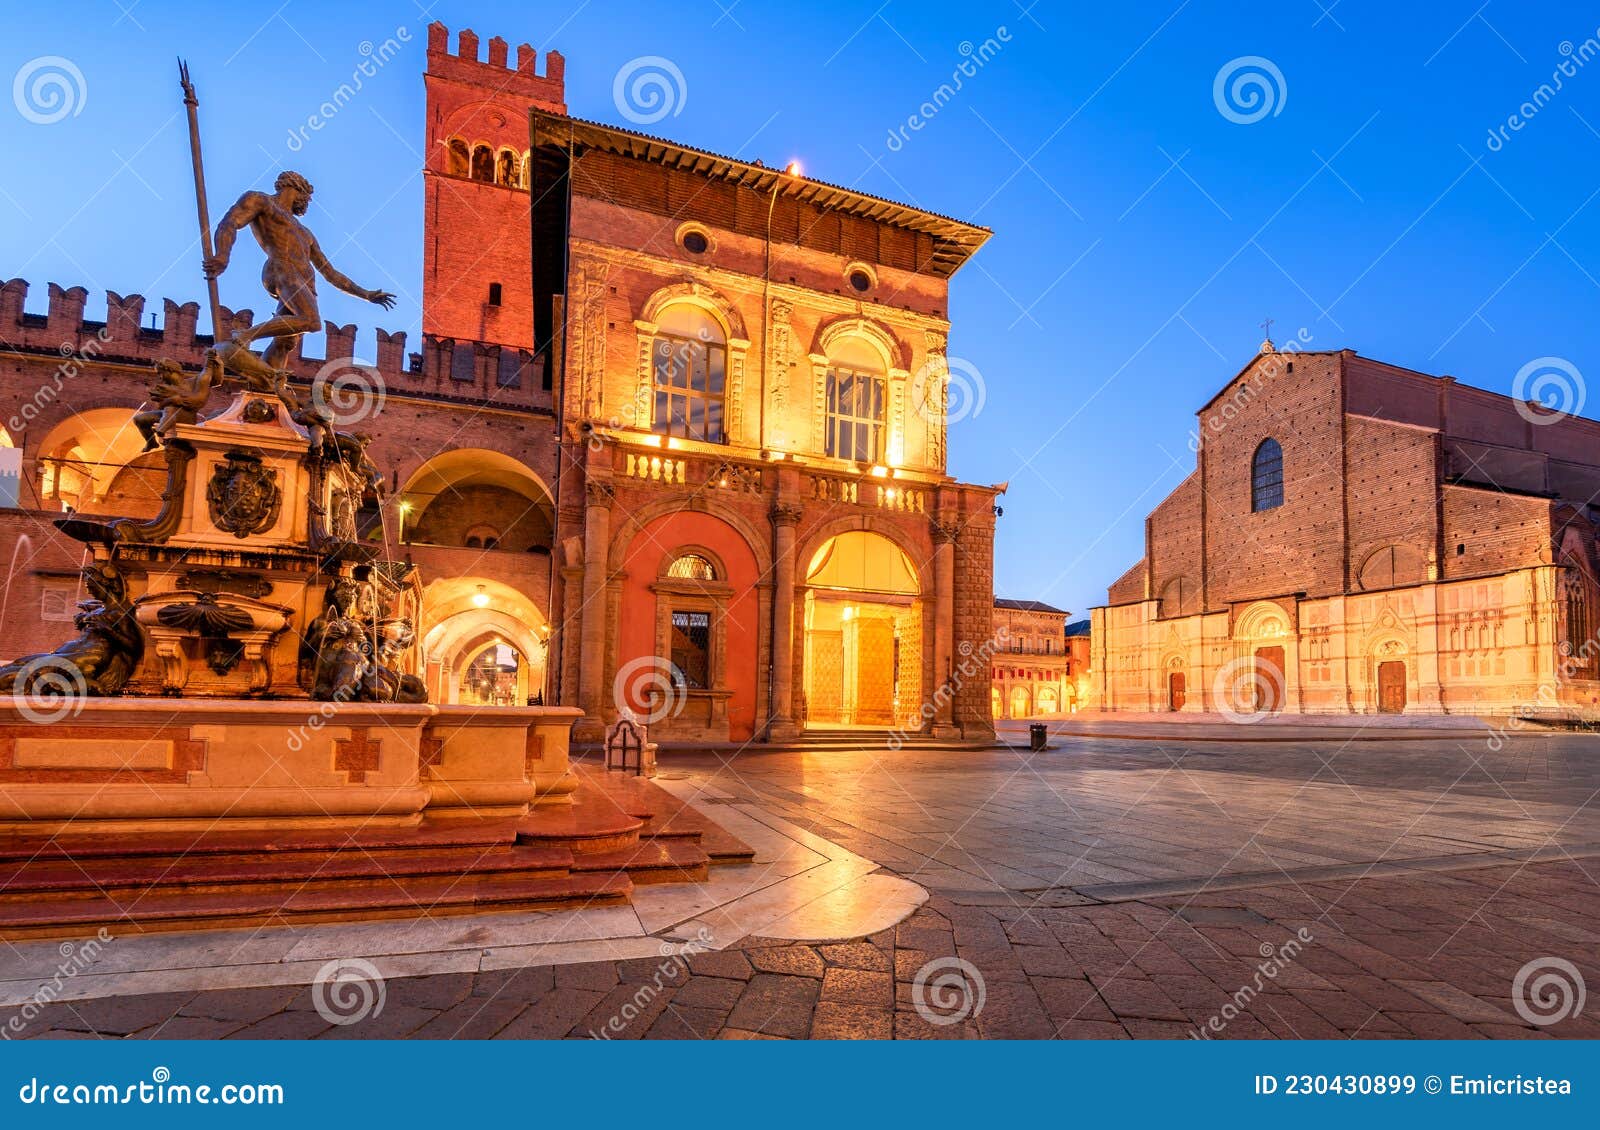 bologna, italy - neptune fountain and piazza maggiore